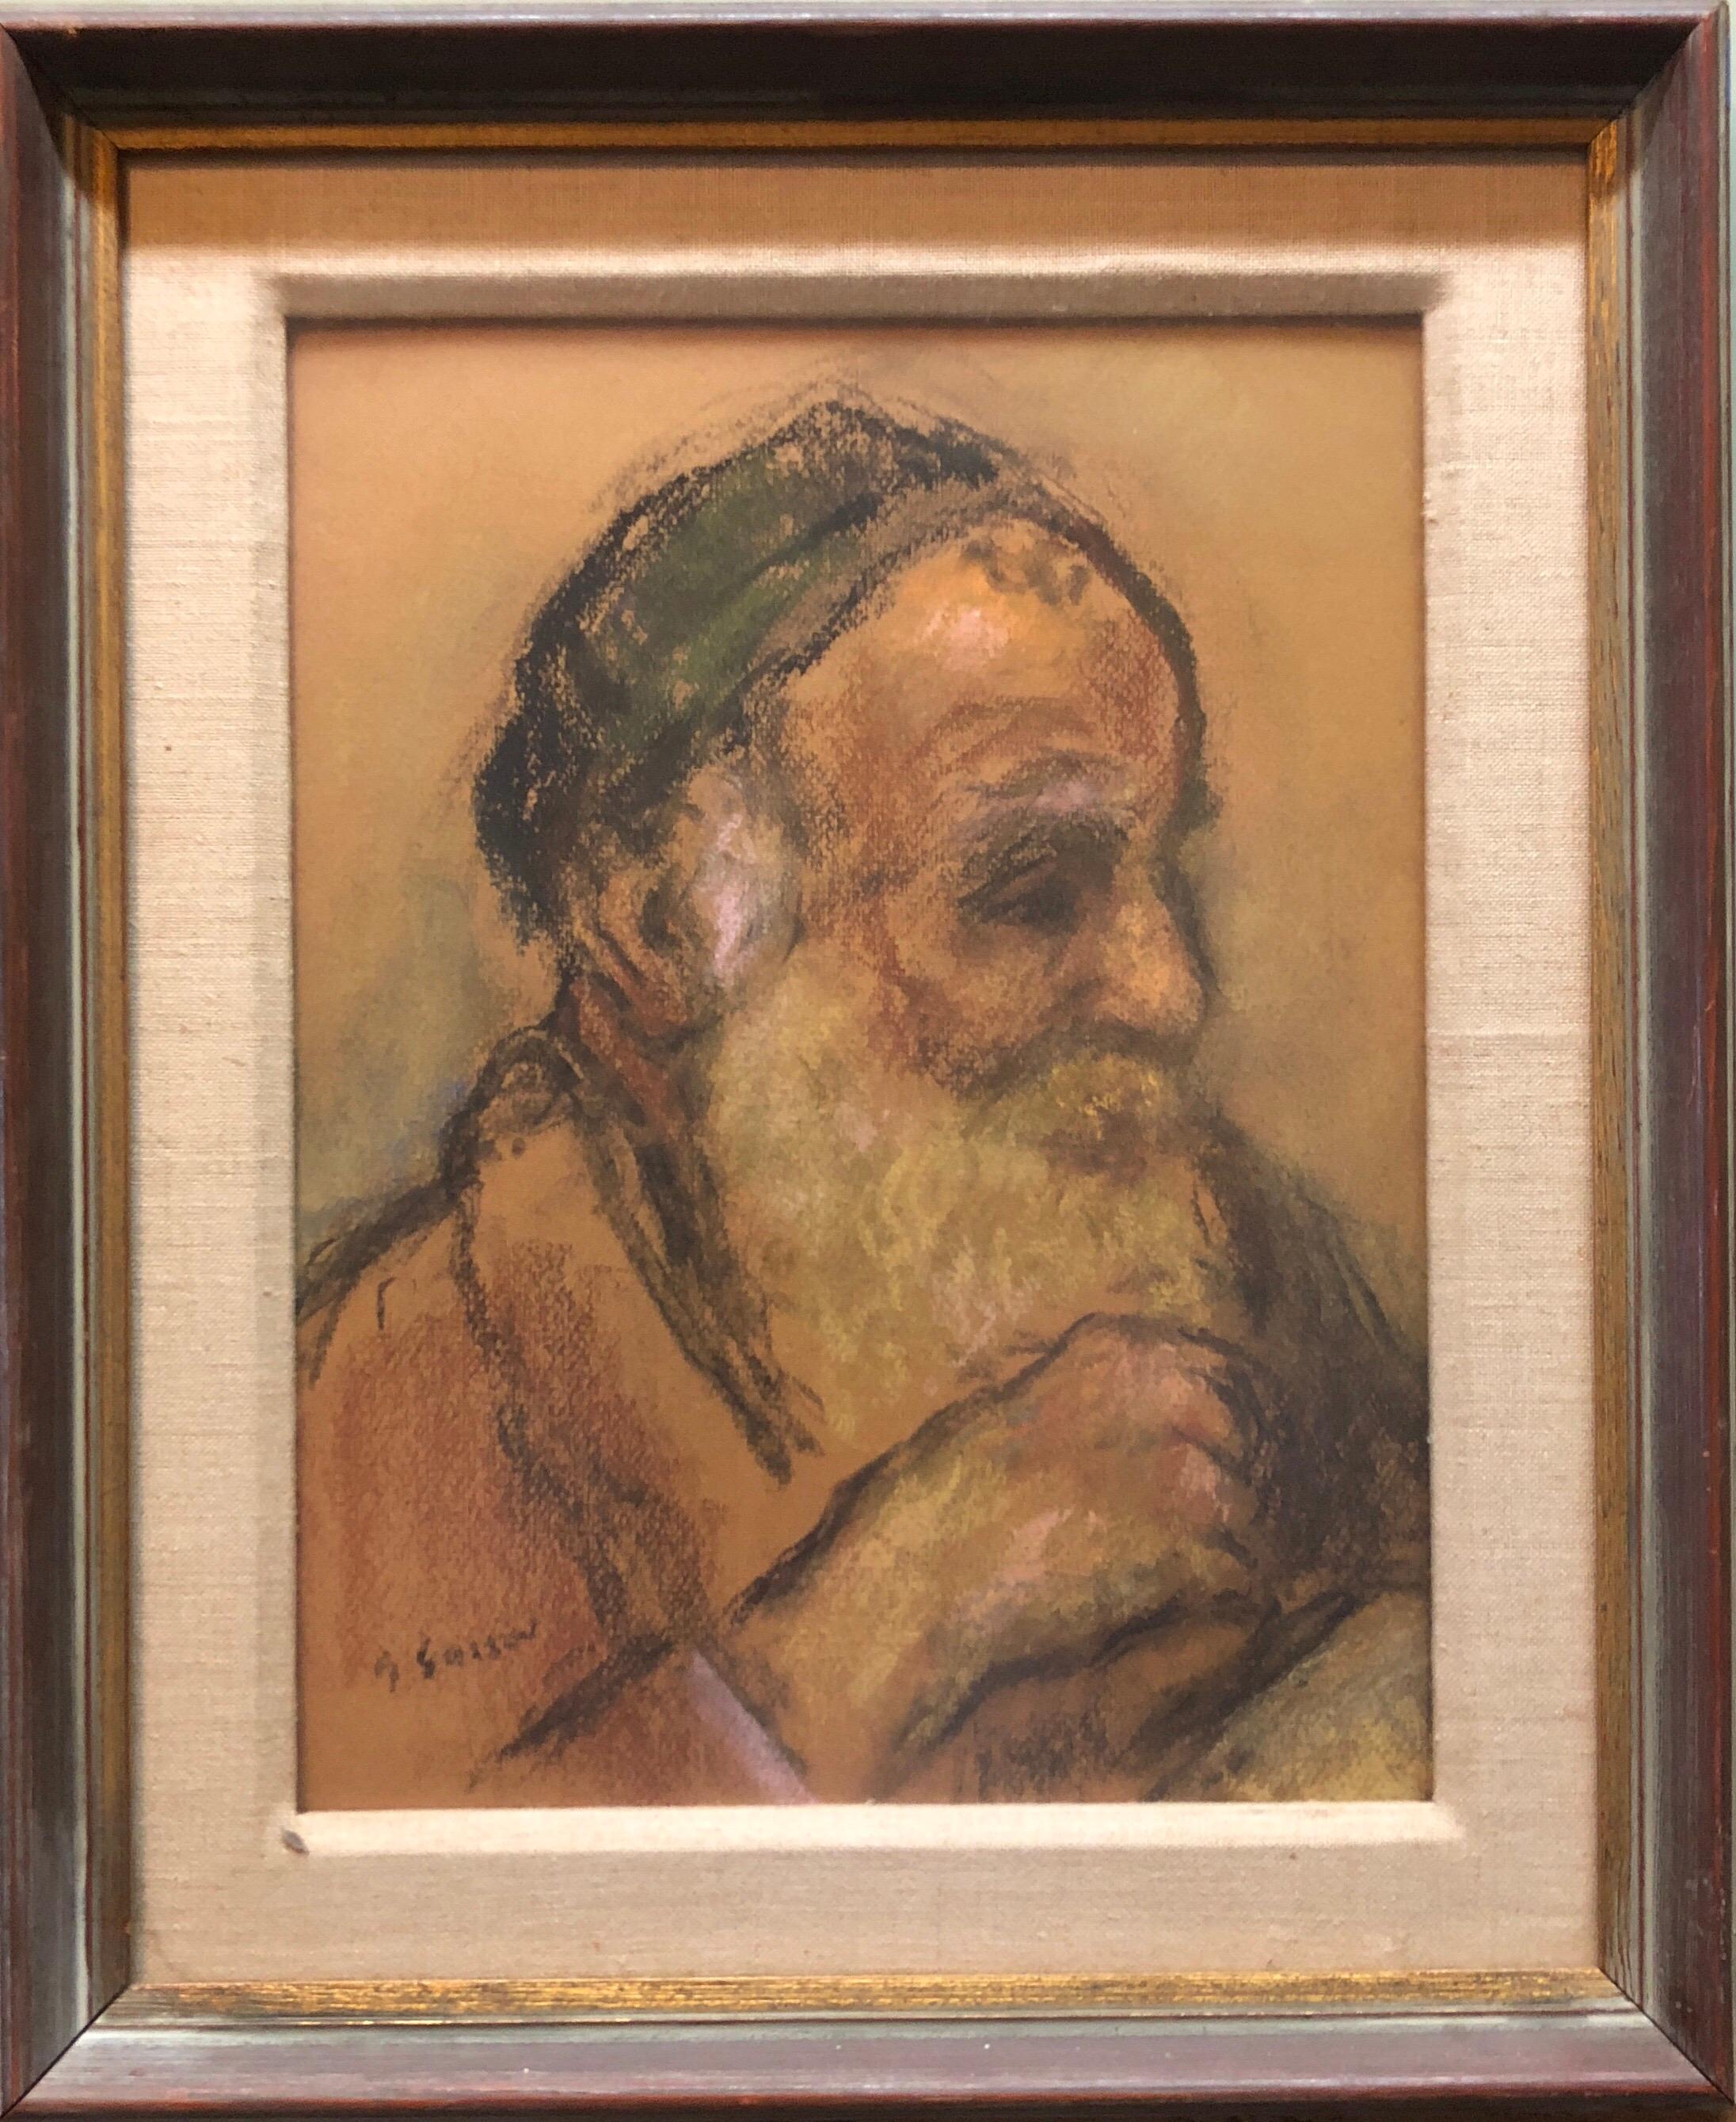 Judaica Pastell Porträt Rabbiner Gemälde WPA Era Künstler, Sozialrealist (Amerikanischer Realismus), Painting, von Bernard Gussow